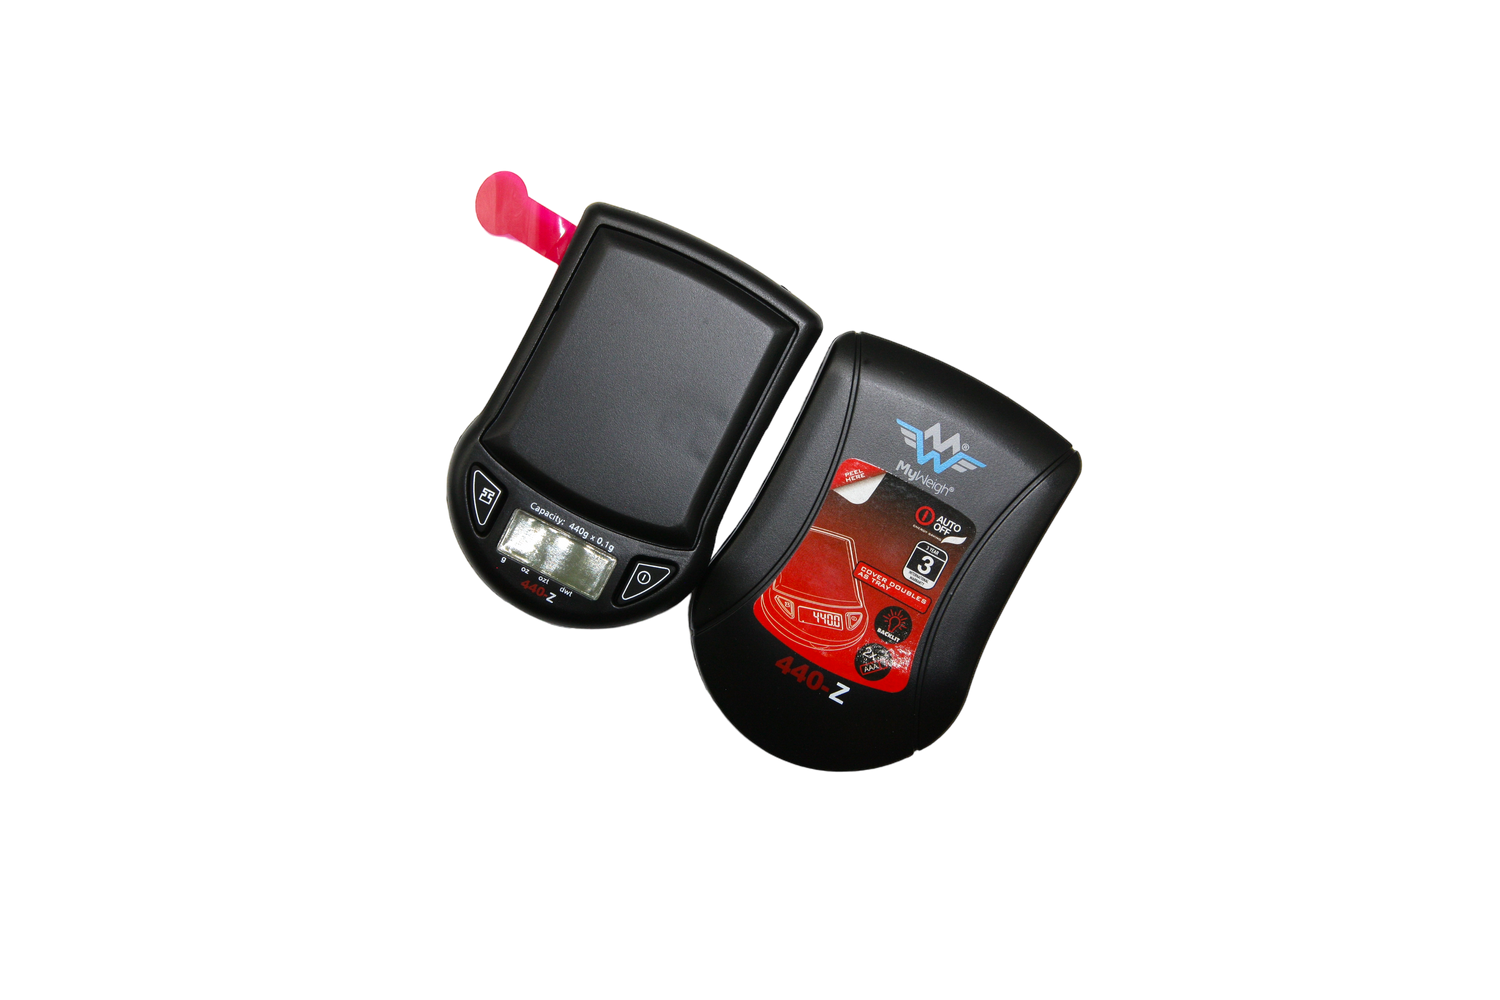 MyWeigh 440-Z Digital Pocket Scale - 440g